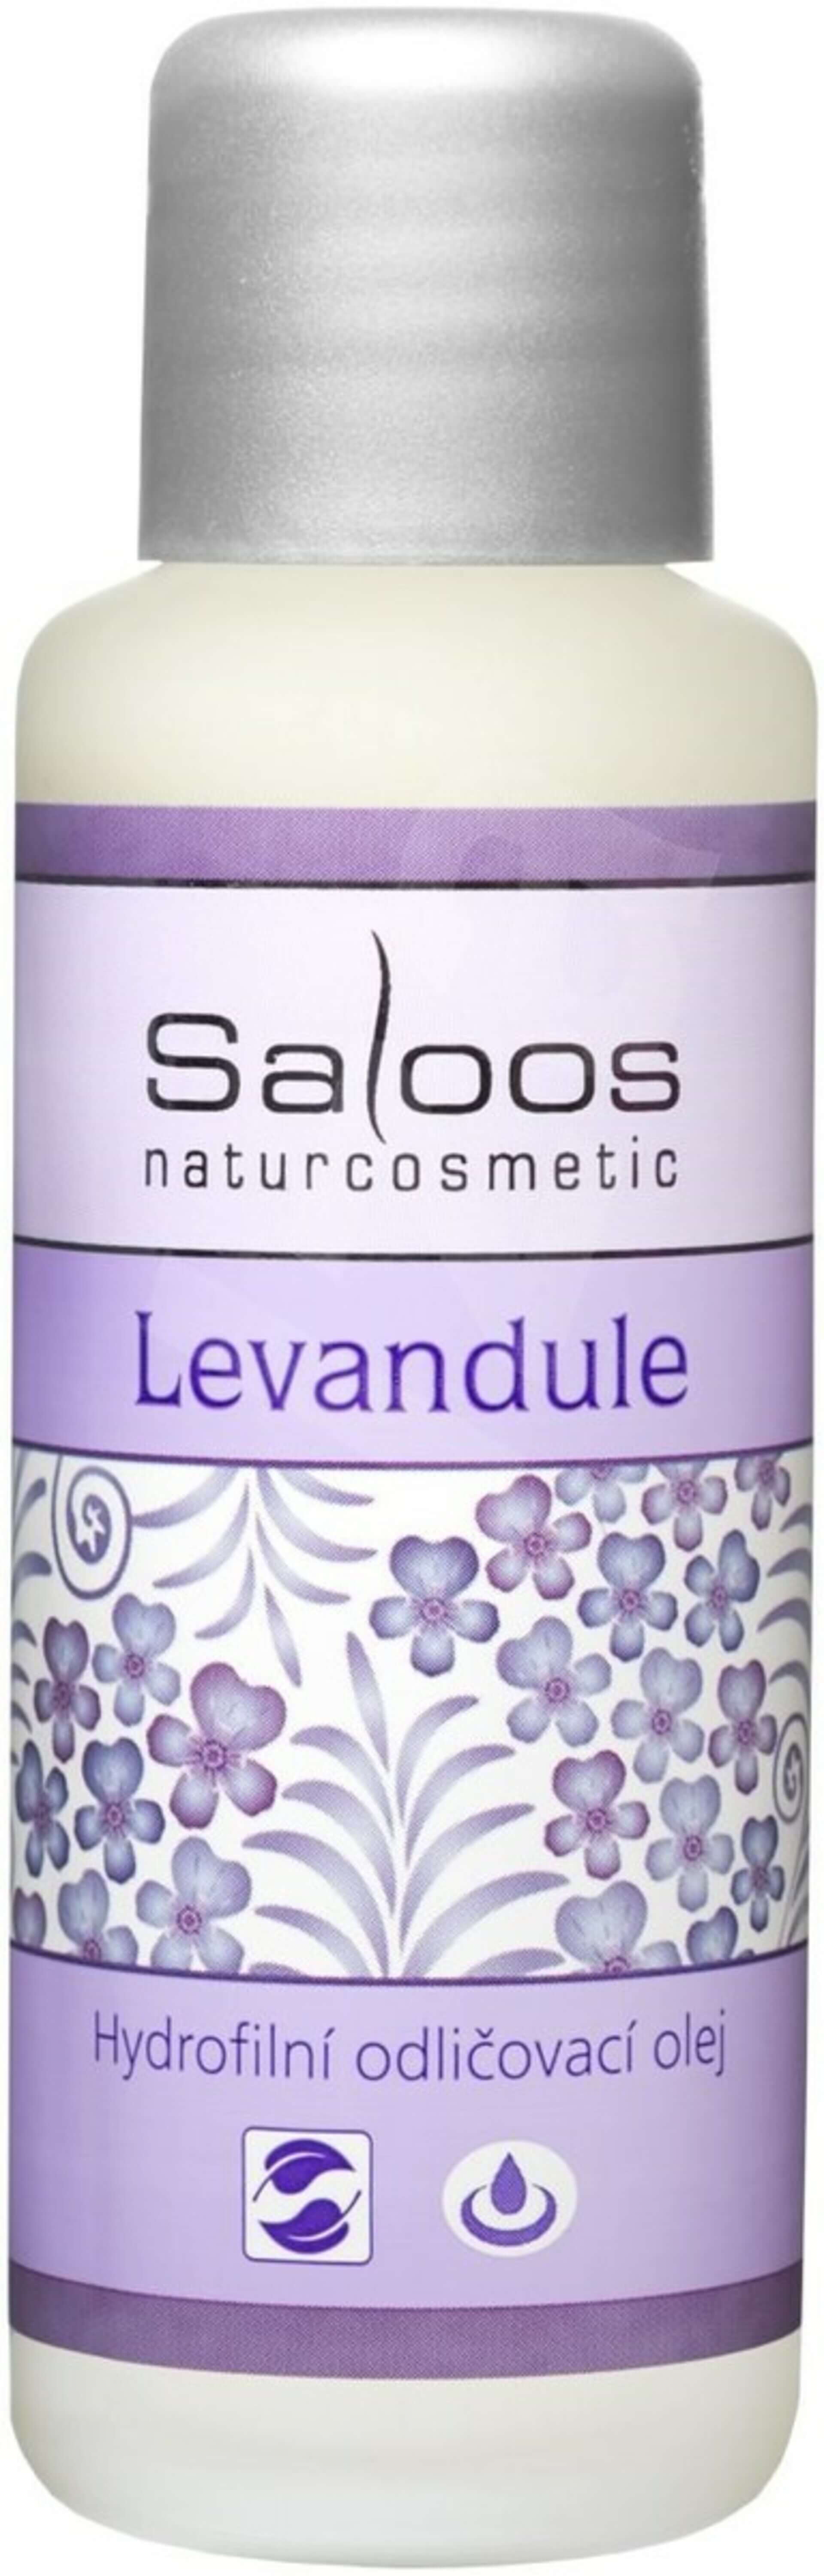 Saloos Hydrofilný odličovací olej LEVANDUĽA 50 ml